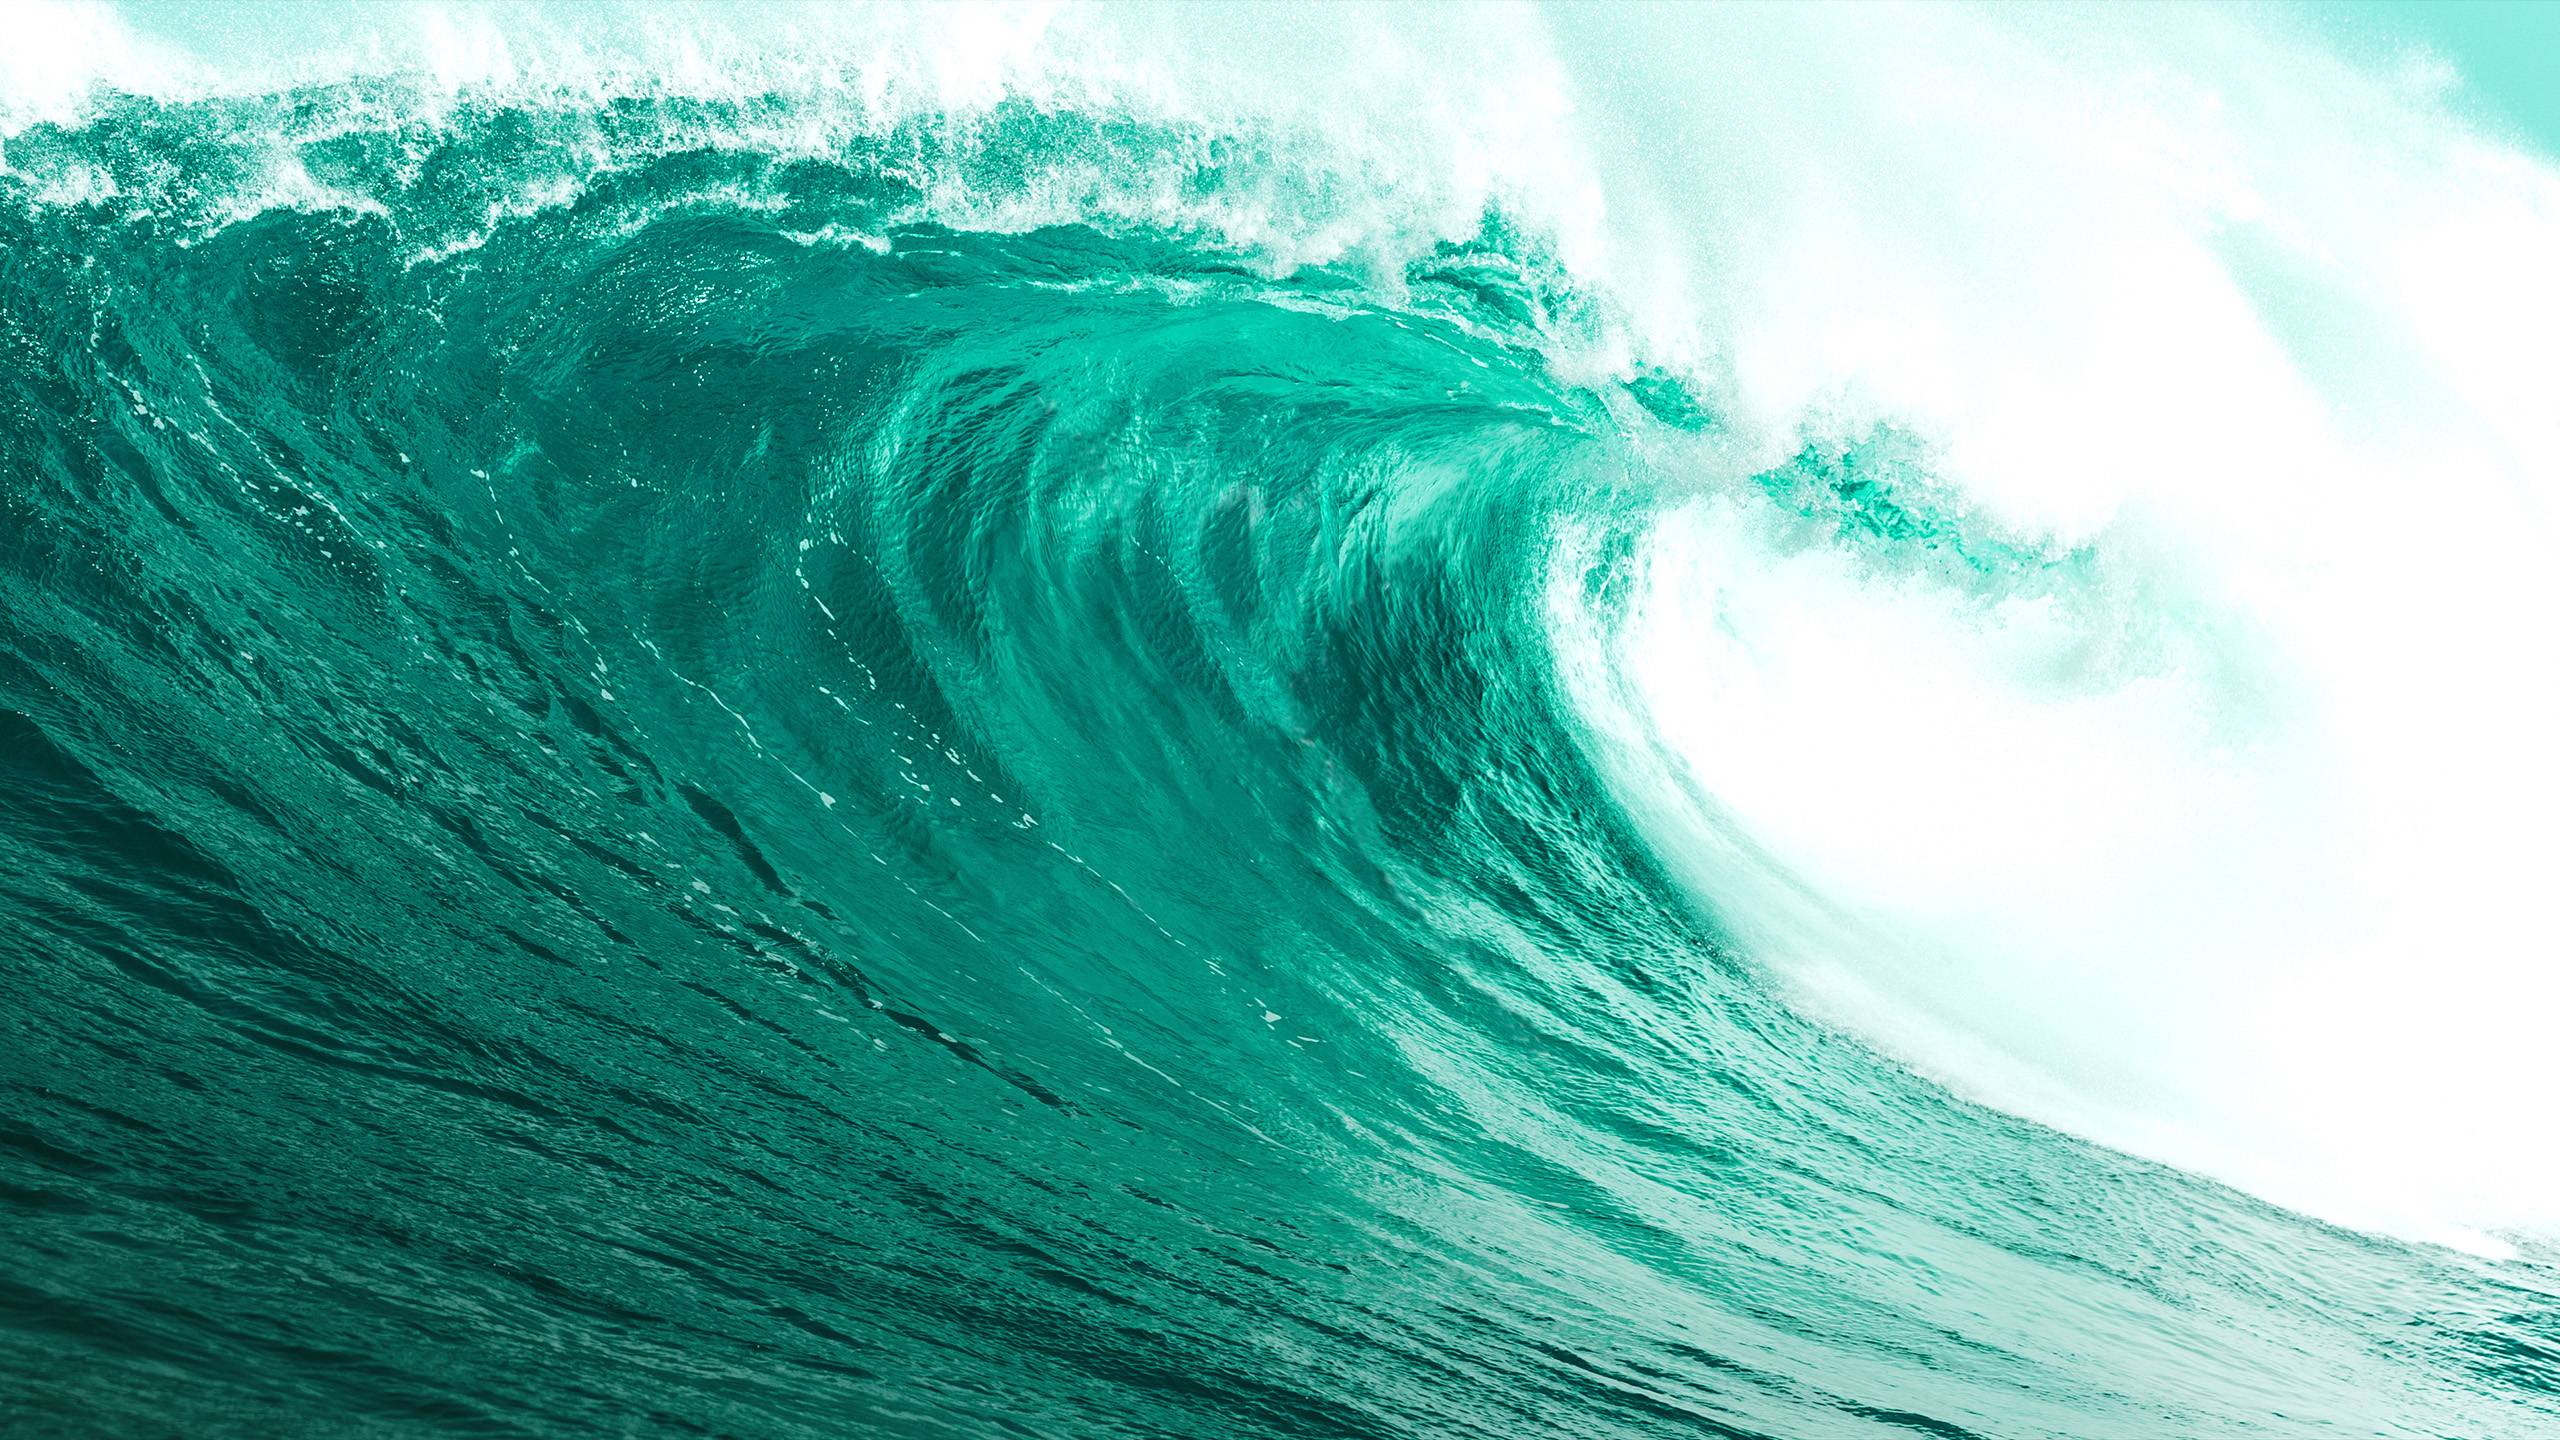 os x mavericks wallpaper,wave,wind wave,water,ocean,green